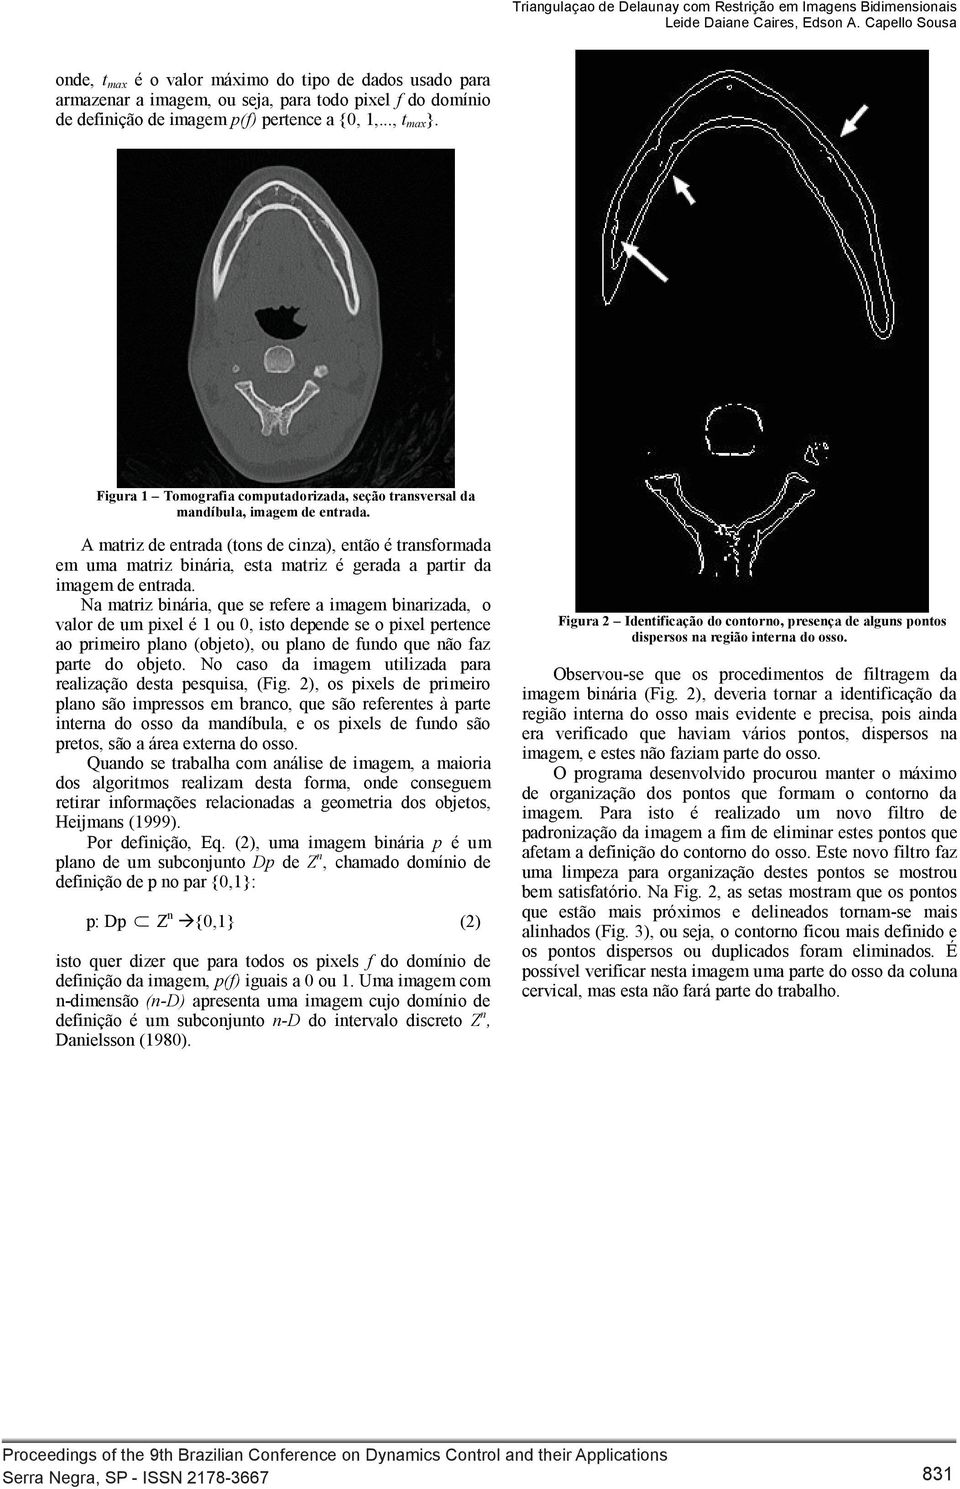 Figura 1 Tomografia computadorizada, seção transversal da mandíbula, imagem de entrada.